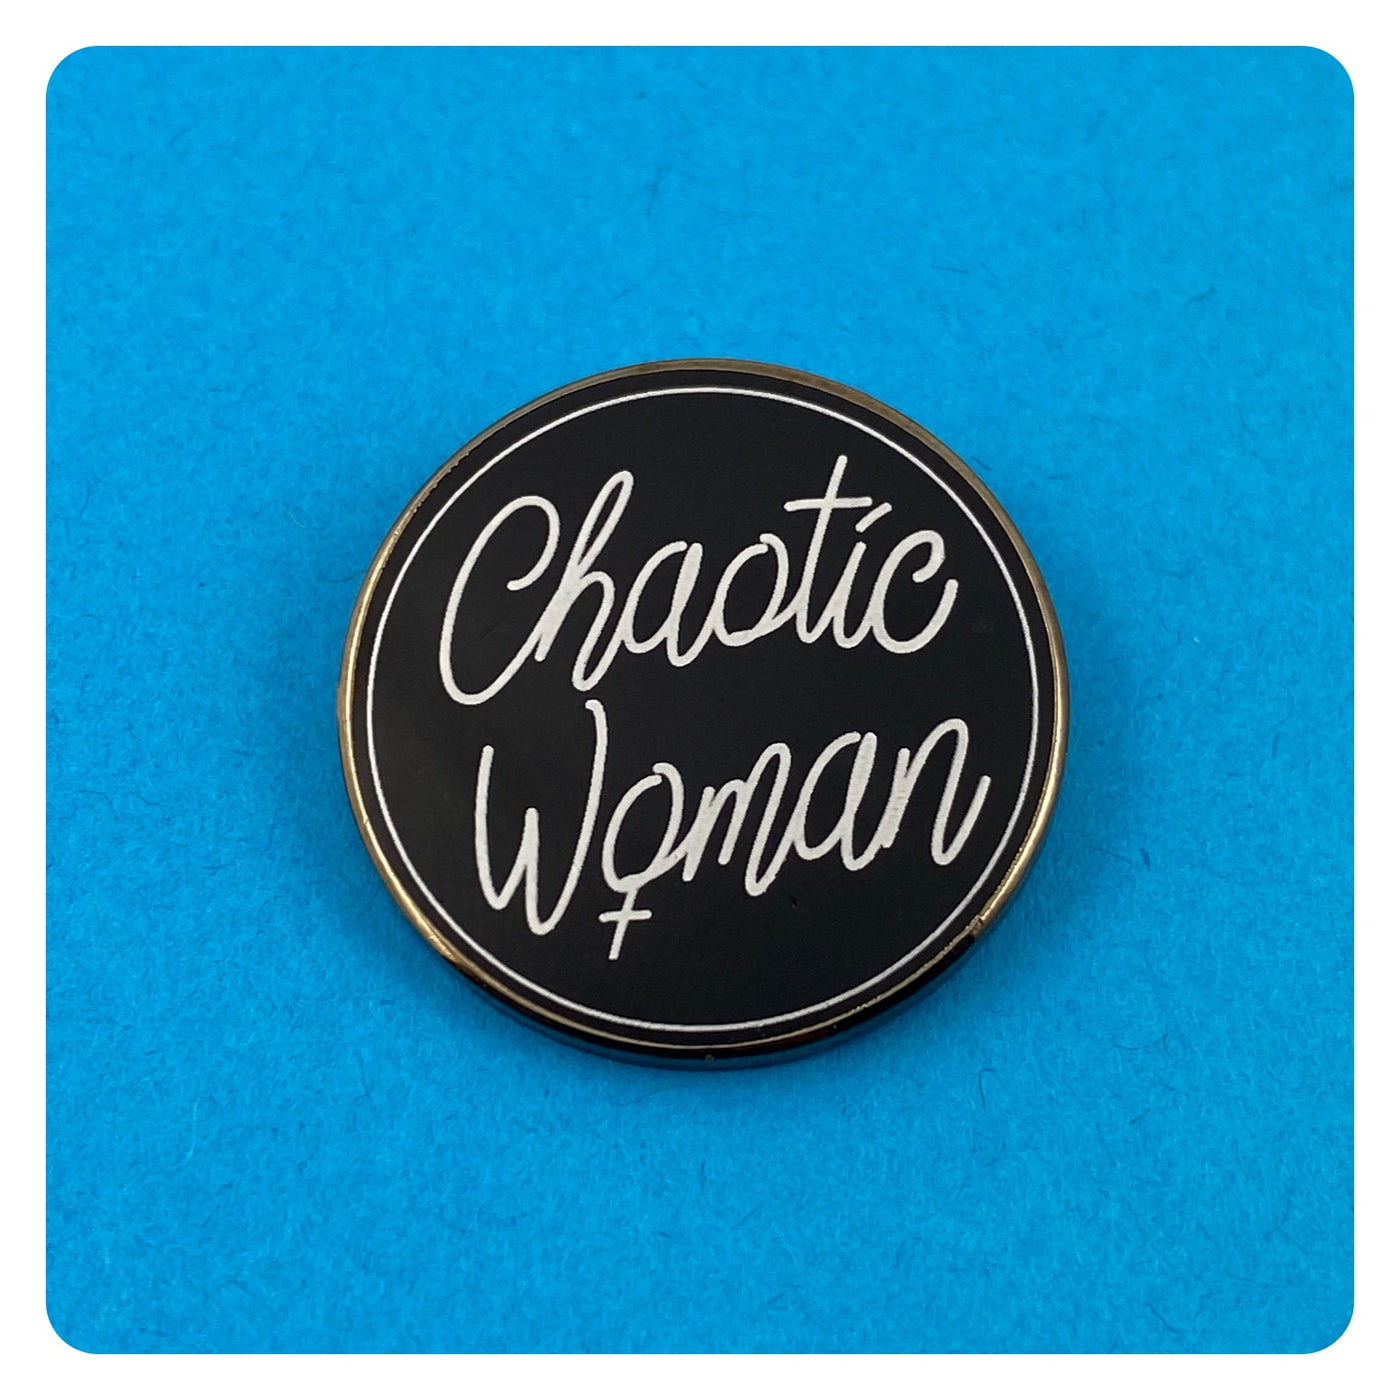 Chaotic Woman Symbol Enamel Pin